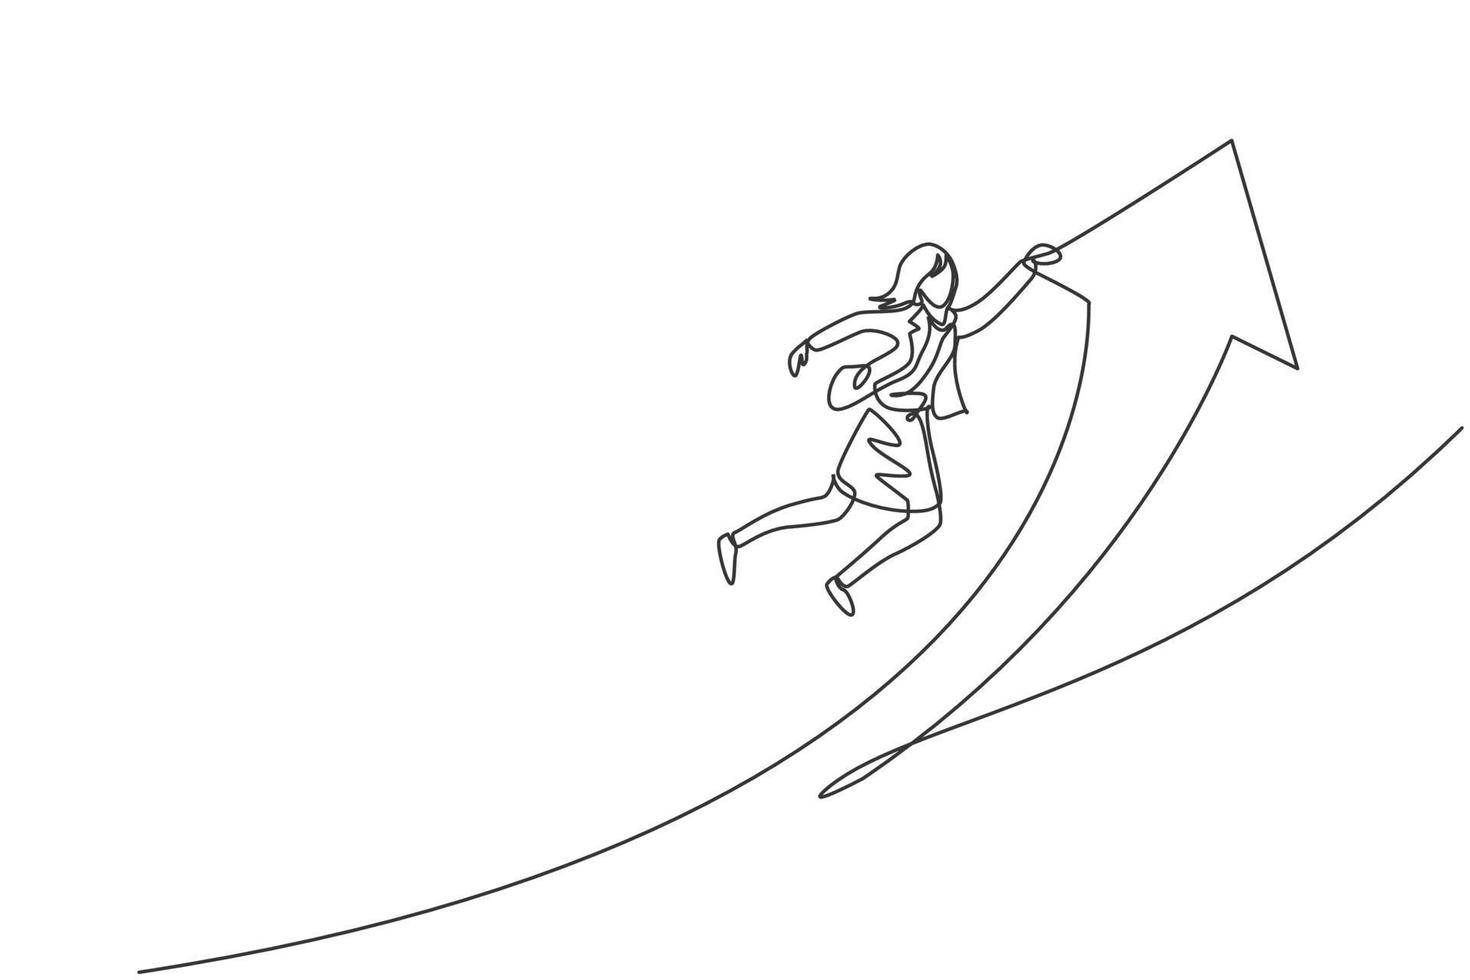 Single One-Line-Zeichnung der jungen intelligenten Geschäftsfrau, die fliegt und springt und das Pfeilsymbol hochhält. Geschäftsumsatzwachstum minimales Konzept. moderne durchgehende Linie zeichnen Design-Grafik-Vektor-Illustration vektor